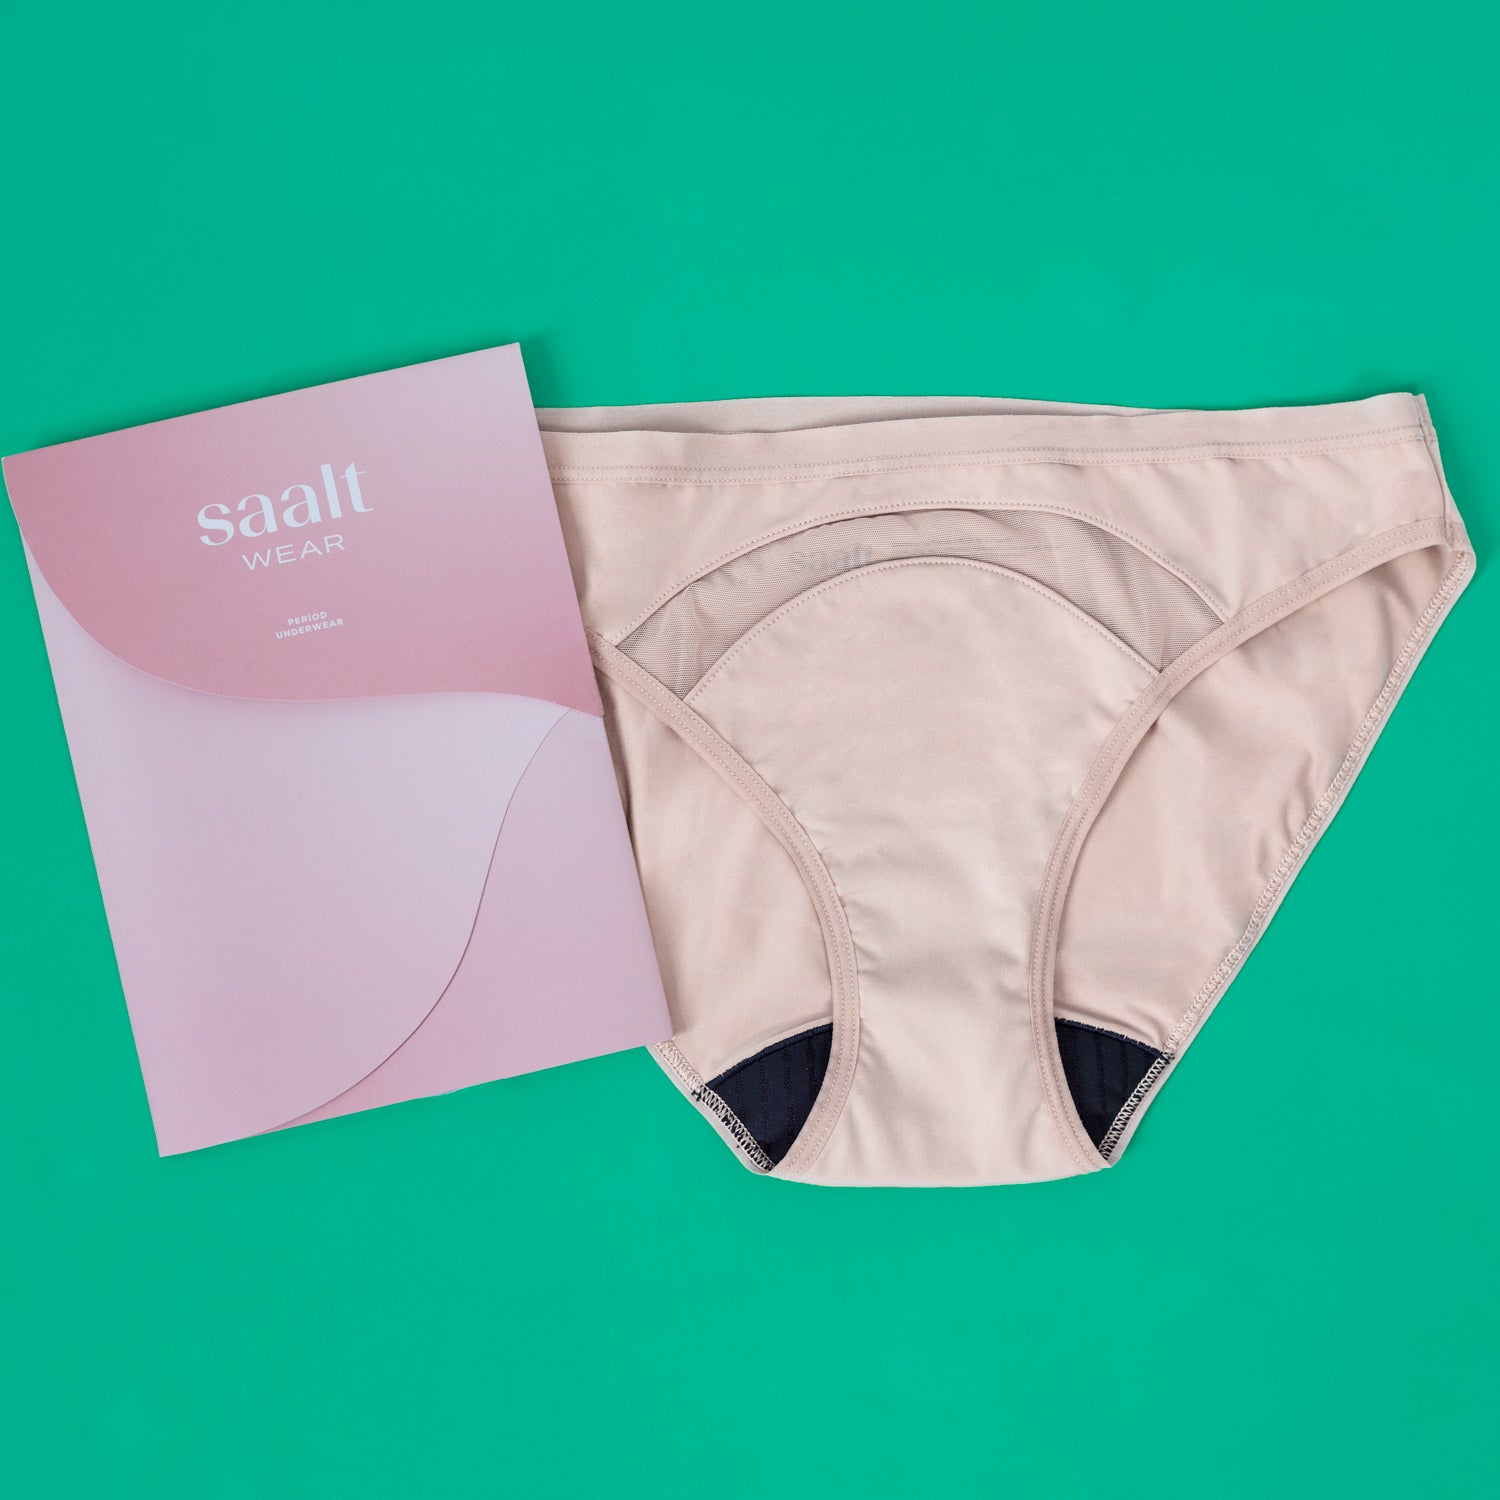 Saalt Period Underwear